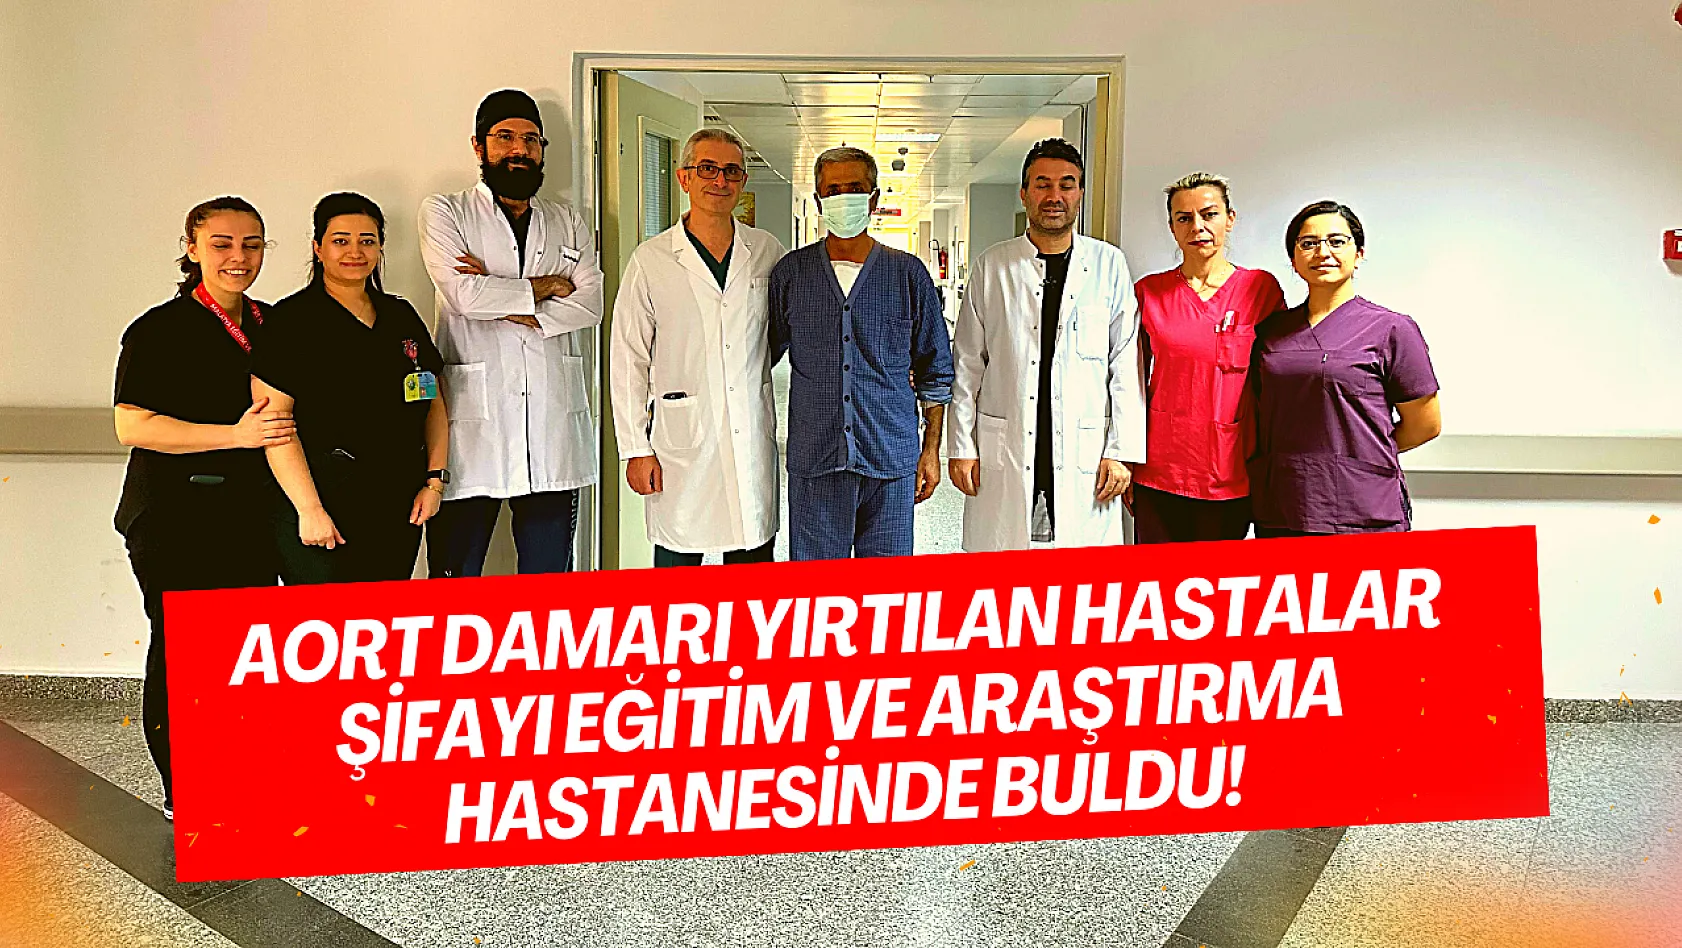 Aort damarı yırtılan hastalar şifayı Eğitim ve Araştırma Hastanesinde buldu!